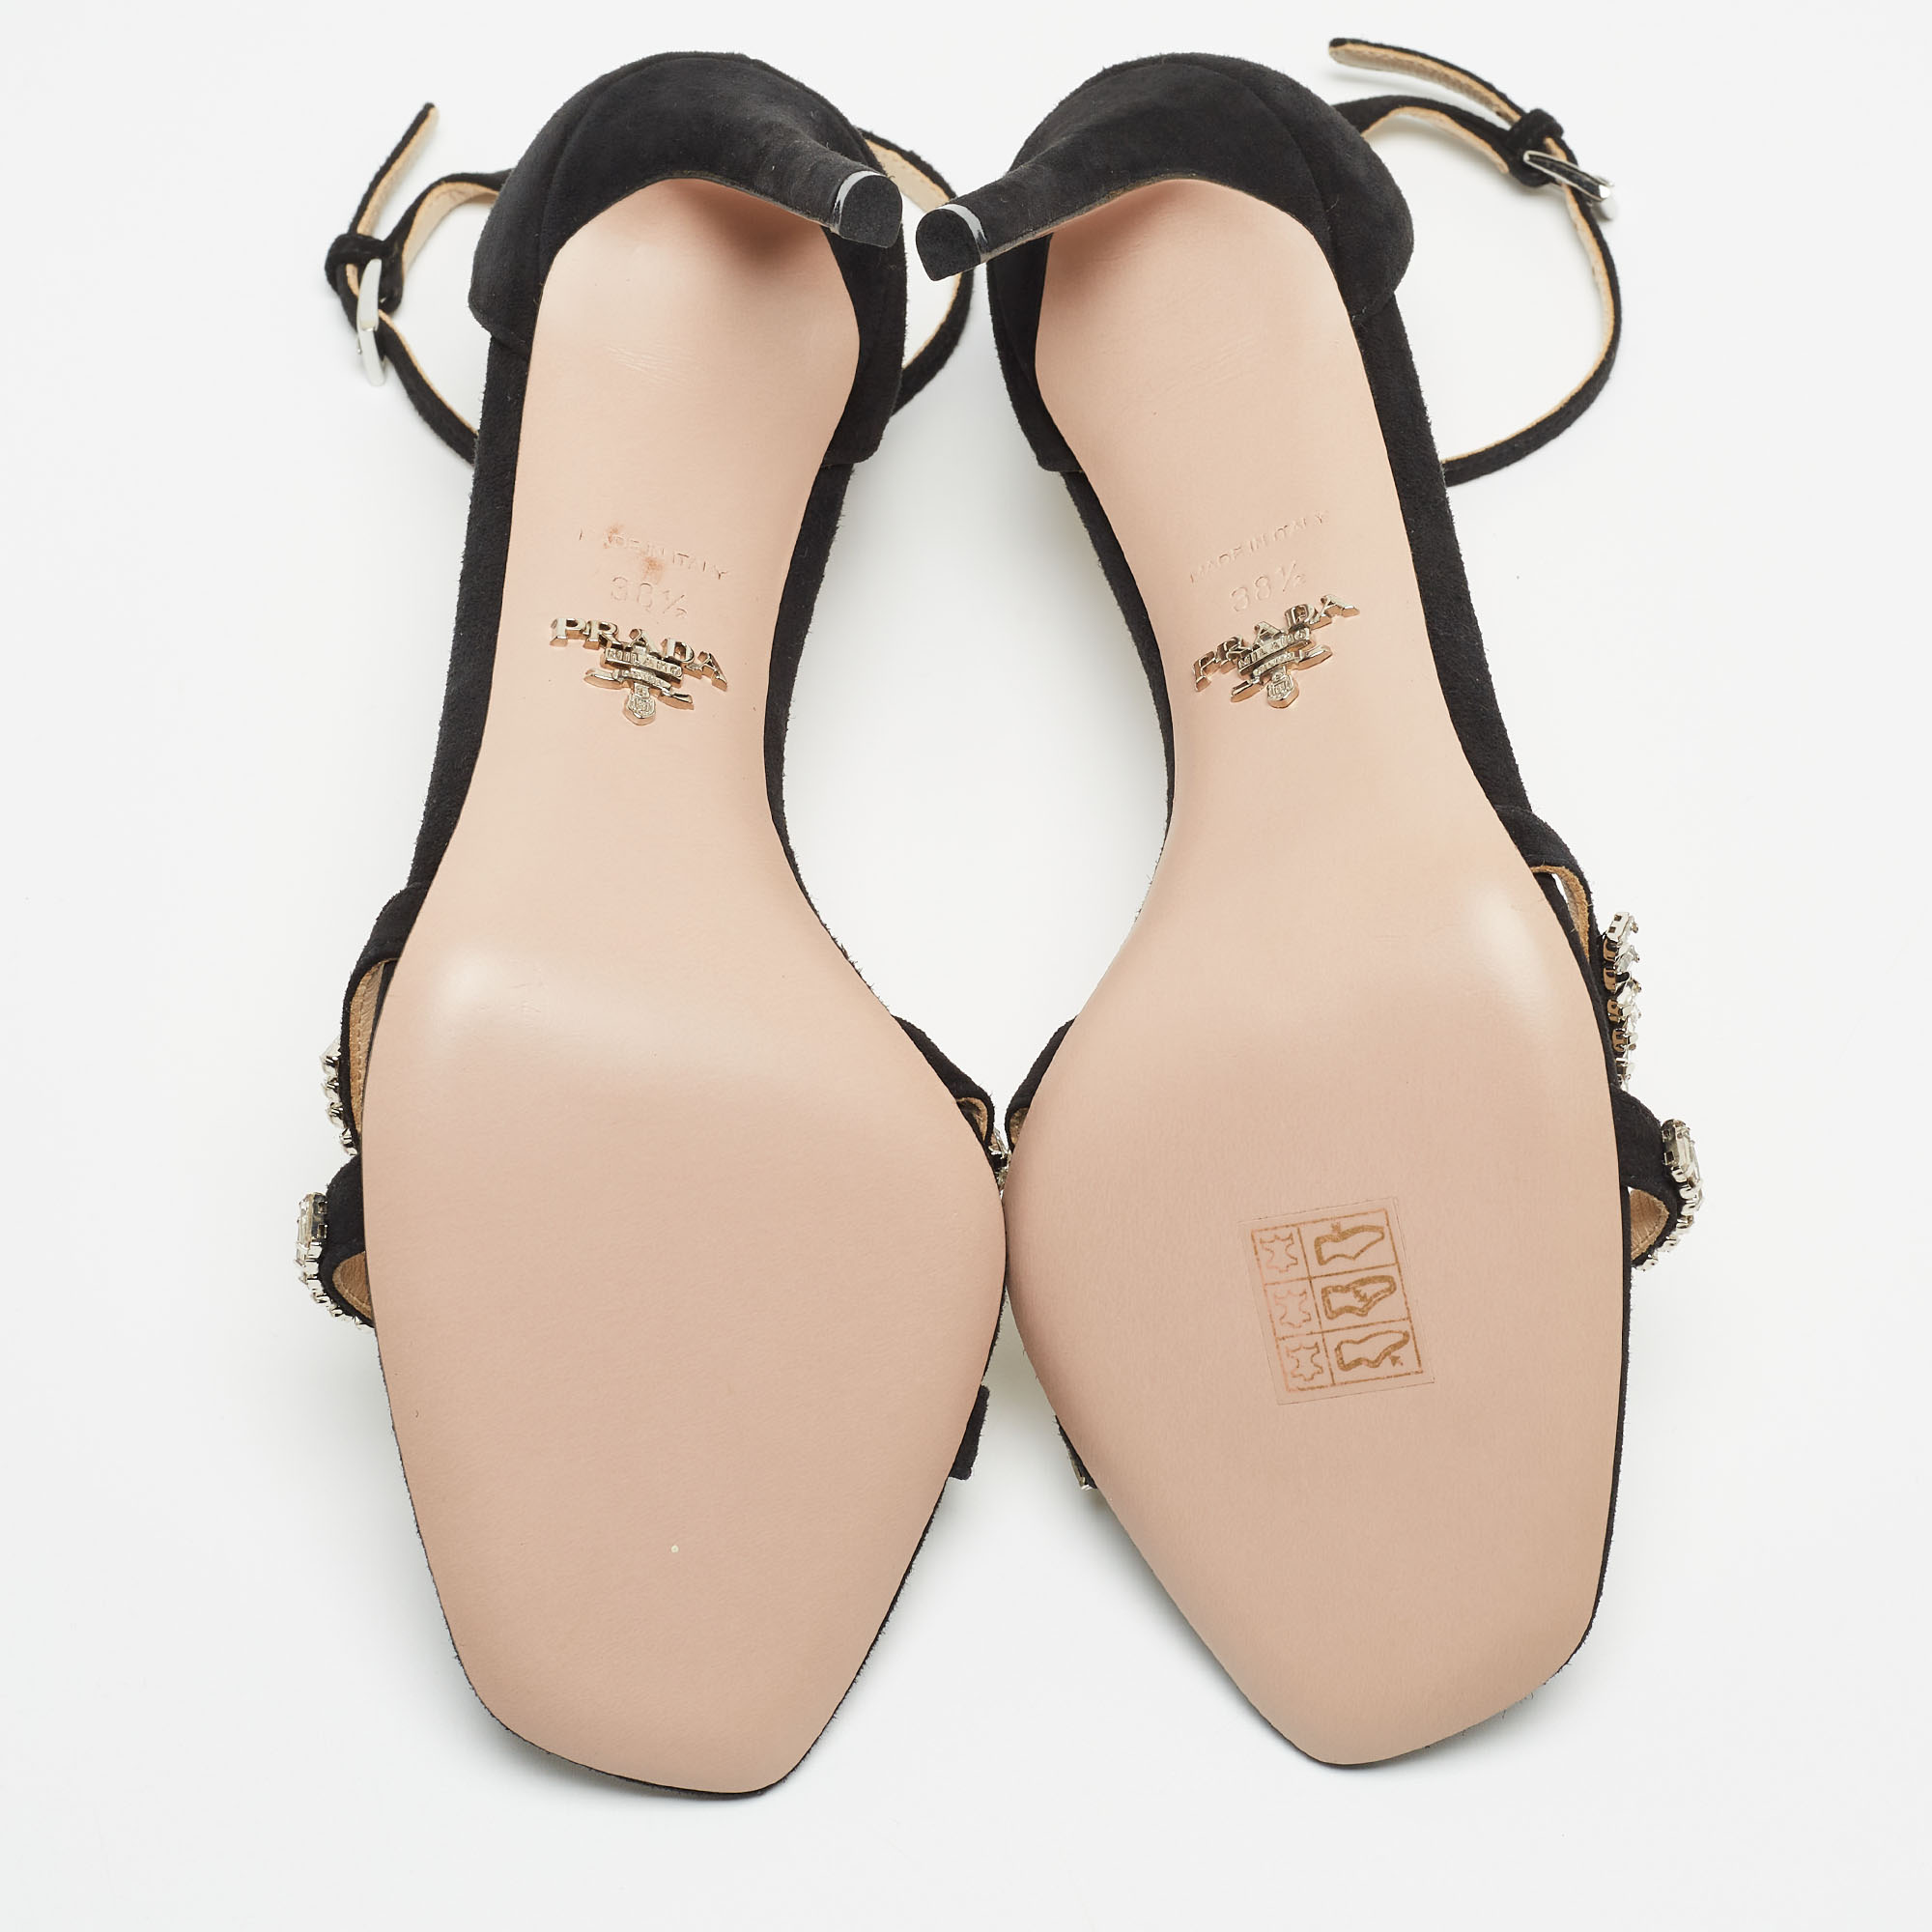 Prada Black Suede Crystals Embellished Ankle Strap Sandals Size 38.5